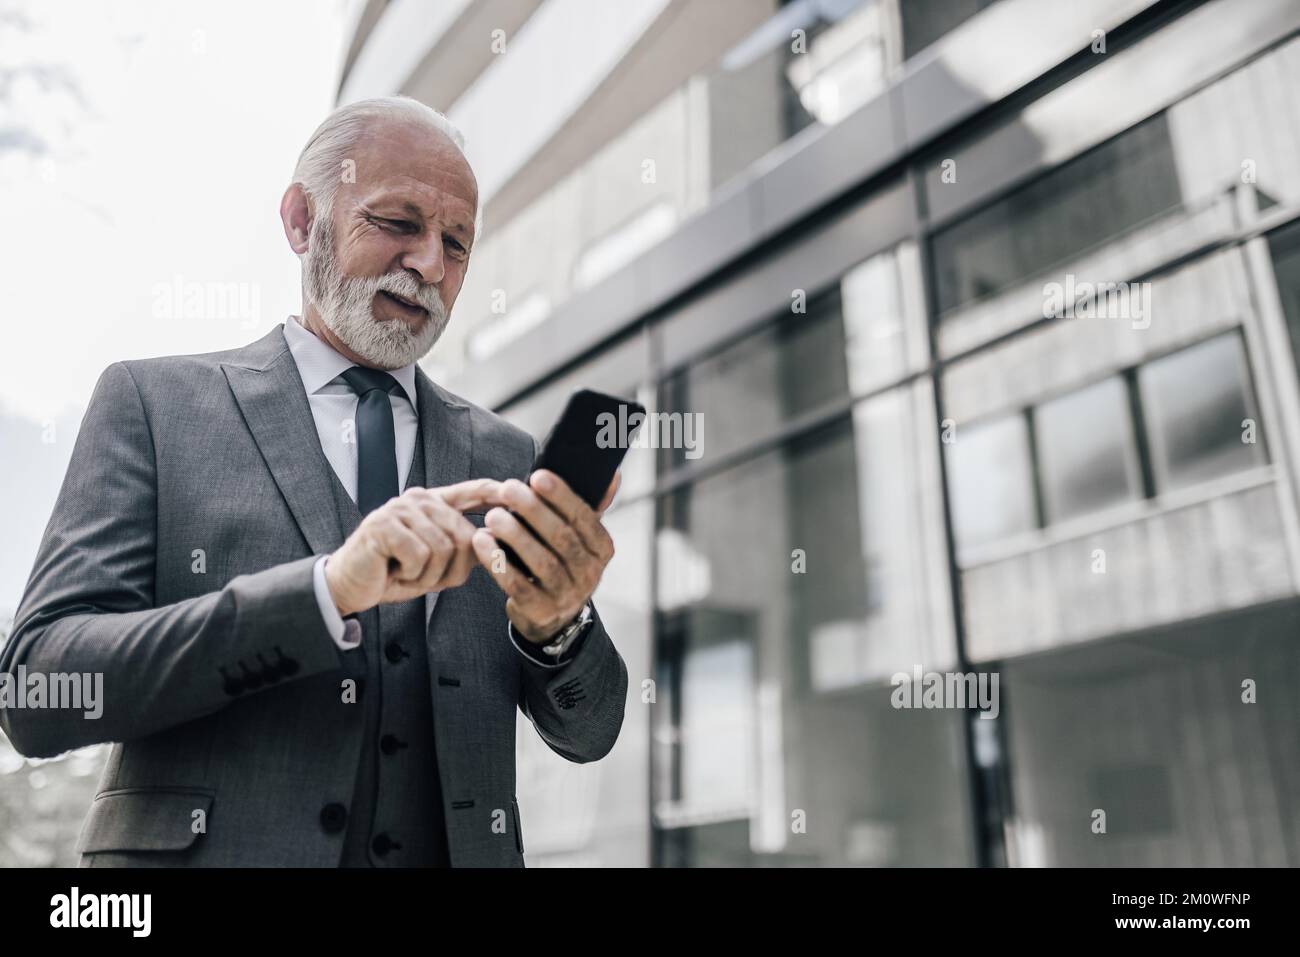 Messagerie professionnelle professionnelle souriante sur smartphone. L'entrepreneur âgé se trouve à l'extérieur de l'immeuble de bureaux. Il porte une combinaison complète. Banque D'Images